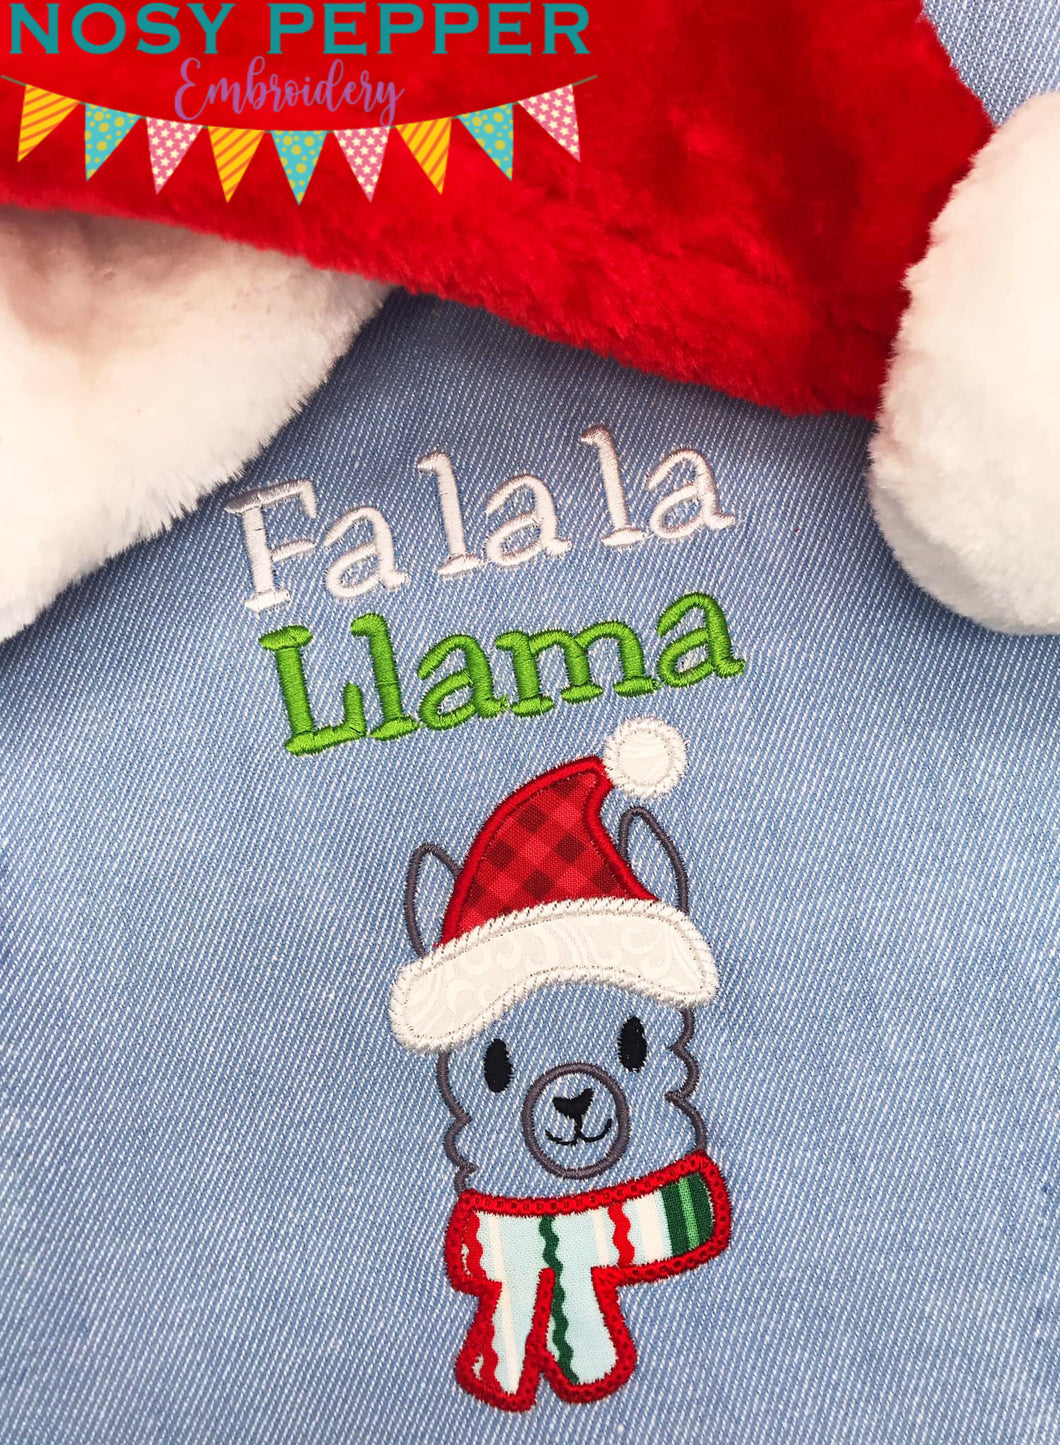 Fa la llama applique machine embroidery design (4 sizes included) DIGITAL DOWNLOAD